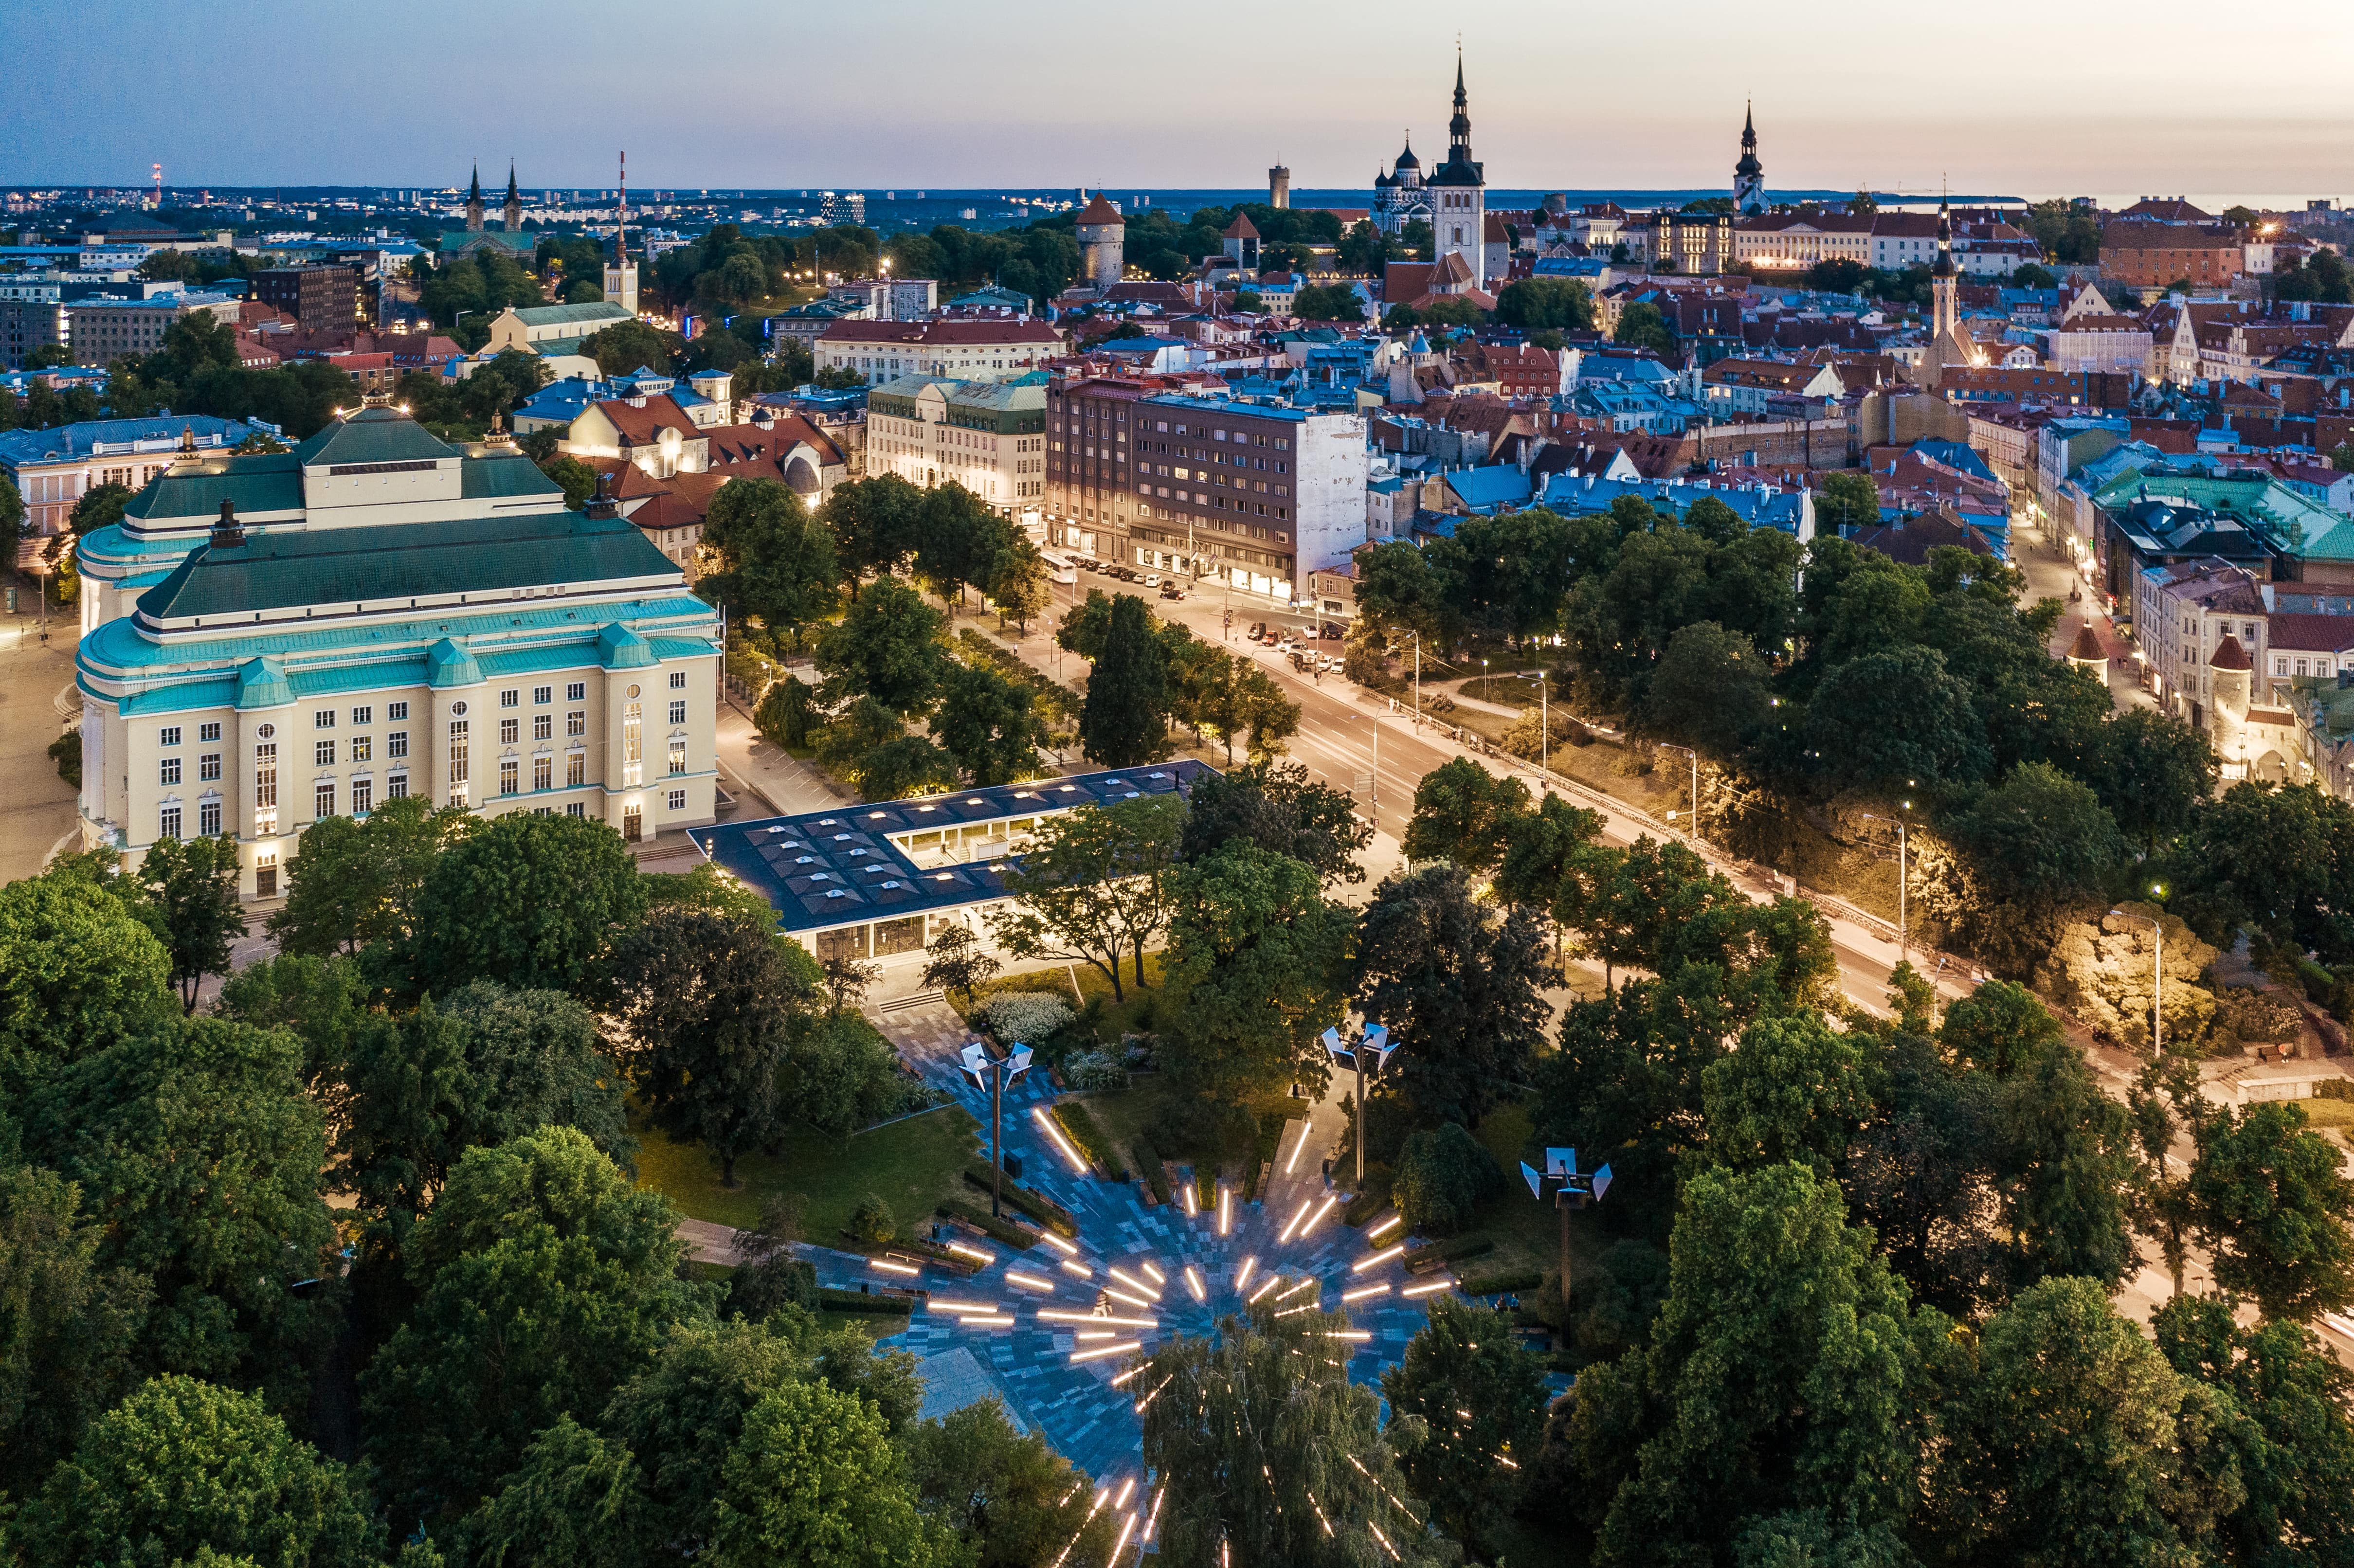 Tallinn's summertime white nights